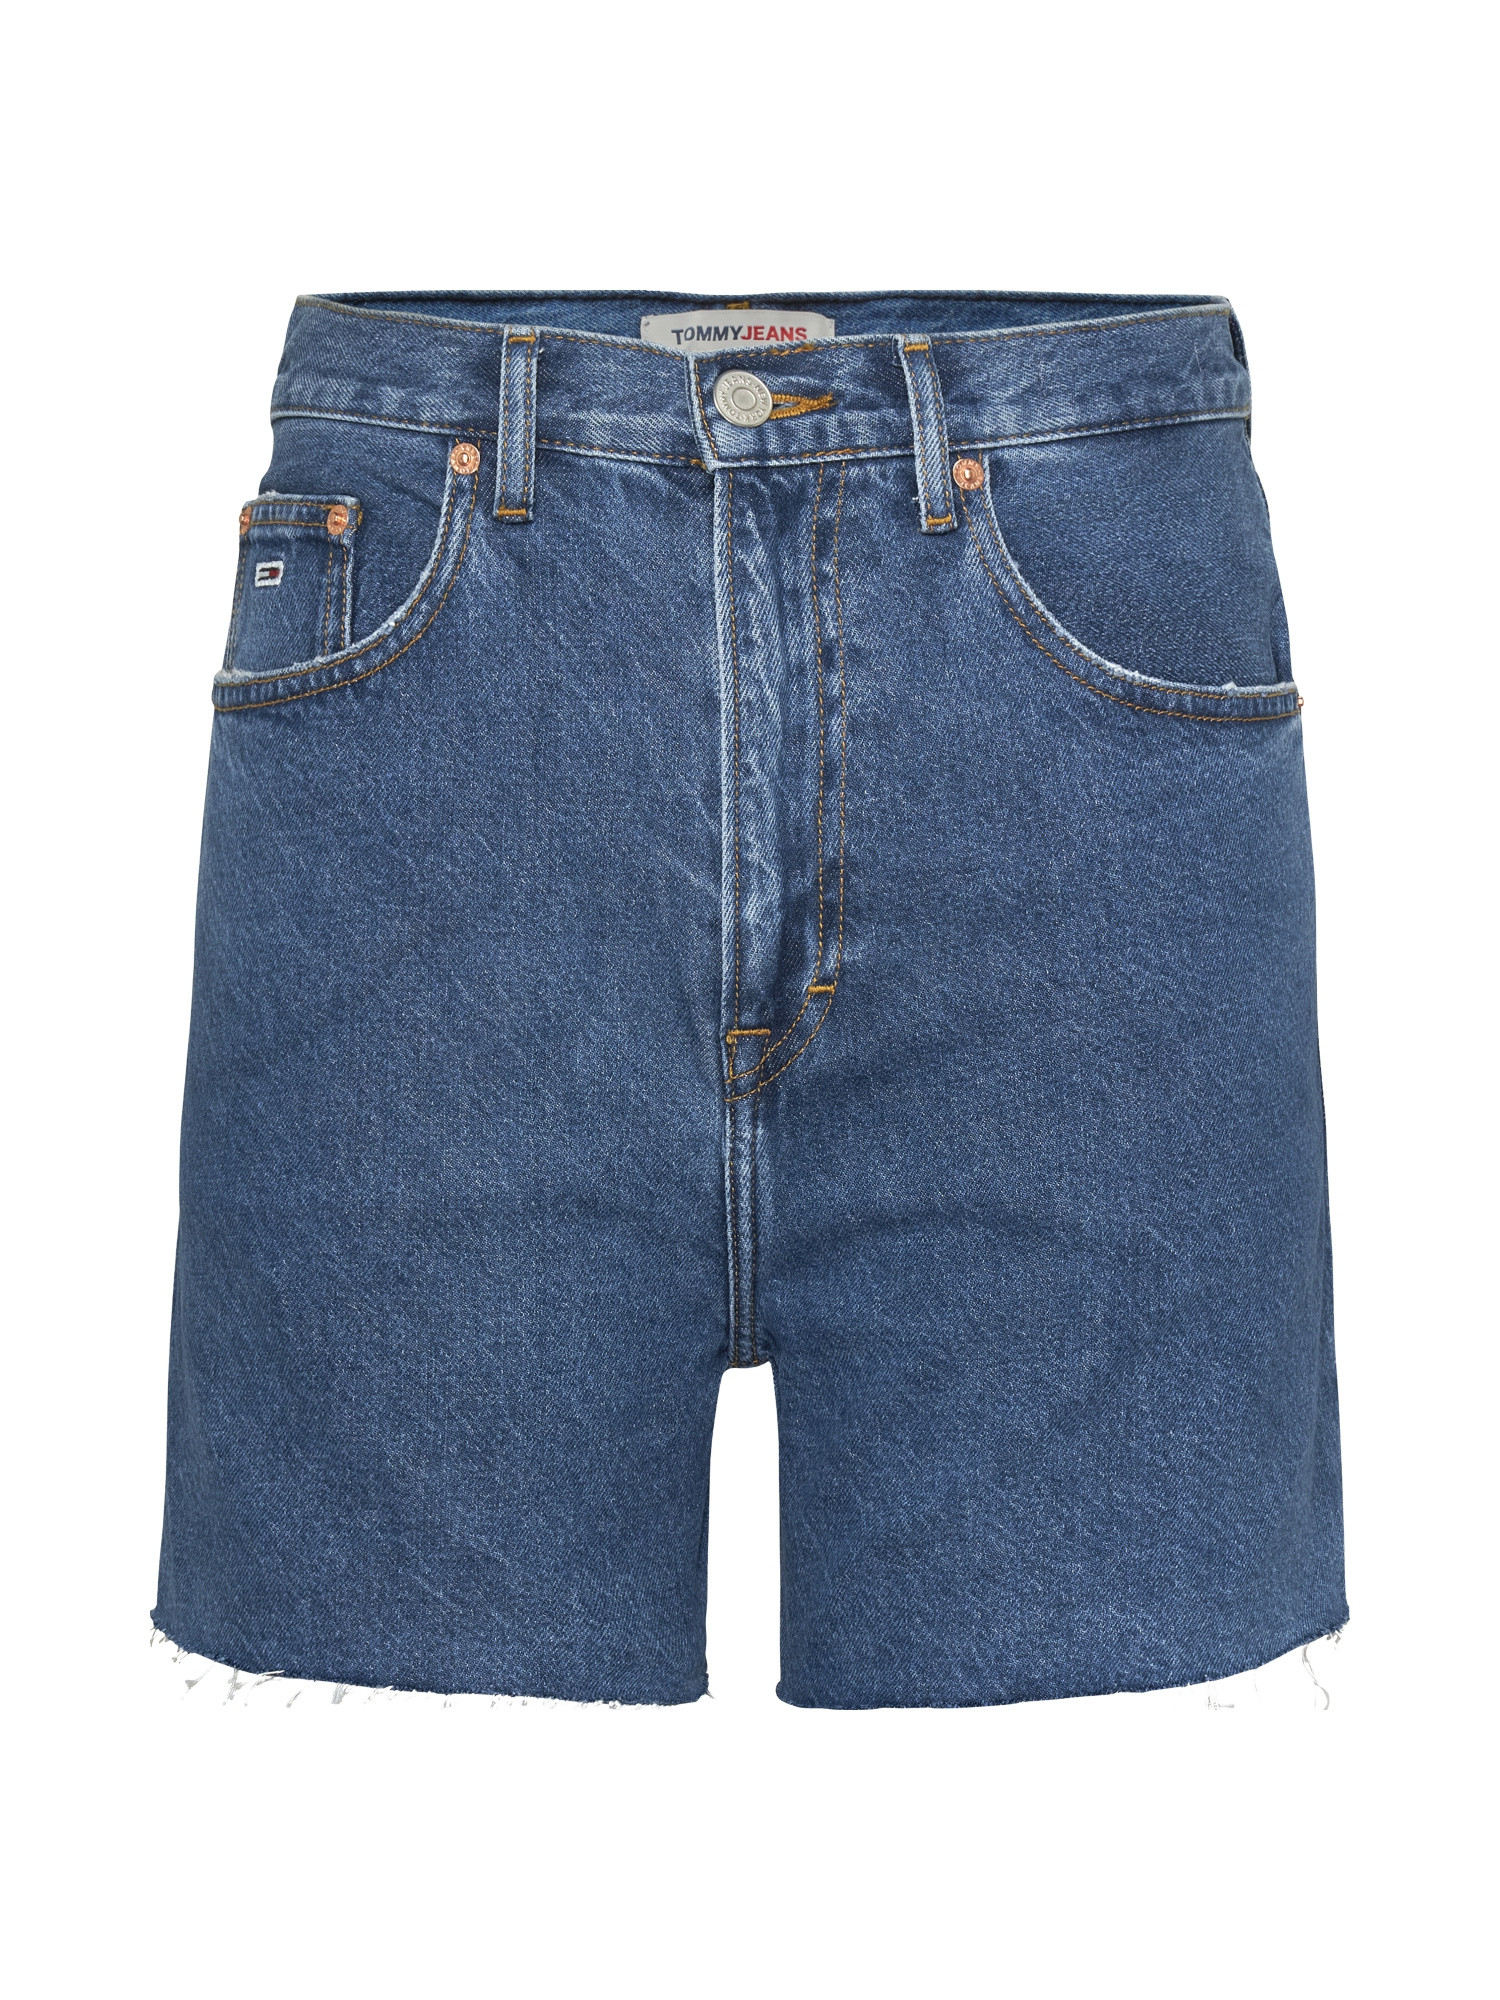 Tommy Jeans - Mom fit denim shorts, Denim, large image number 0